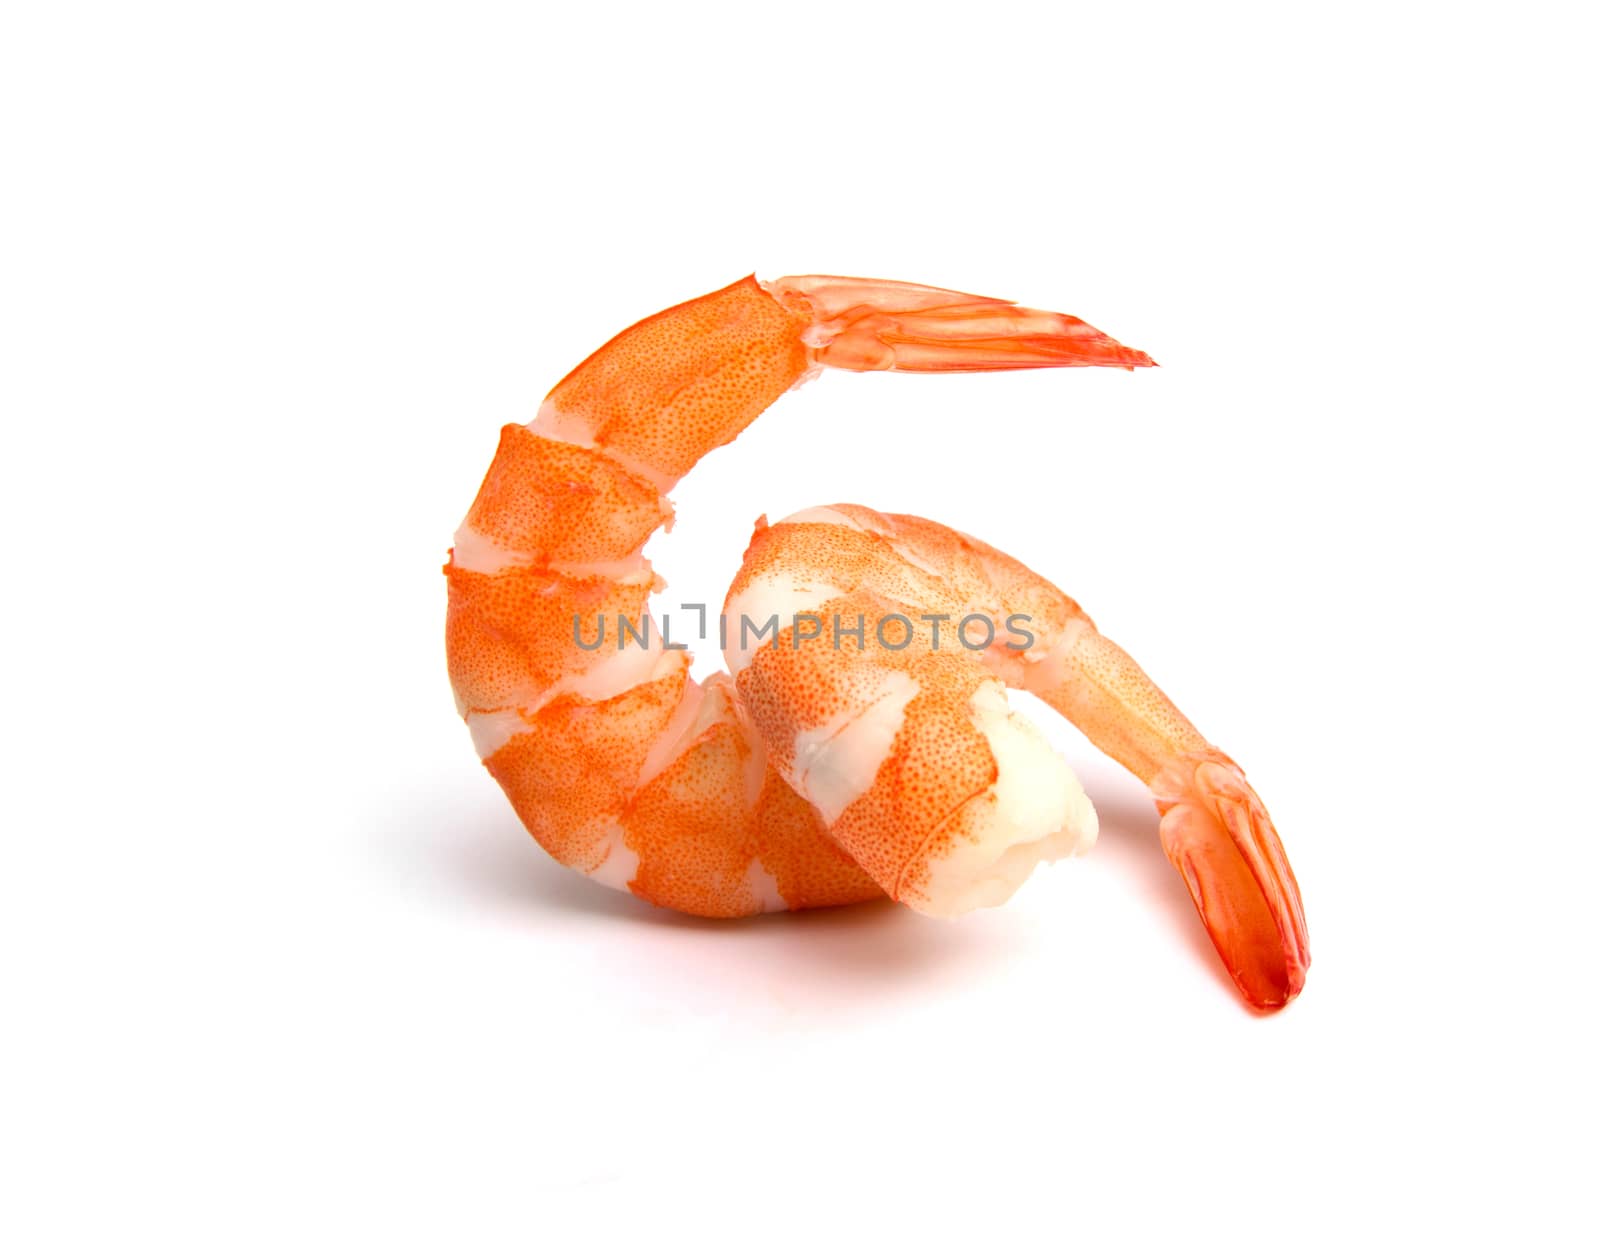 orange shrimps isolated on a white background by kirisa99